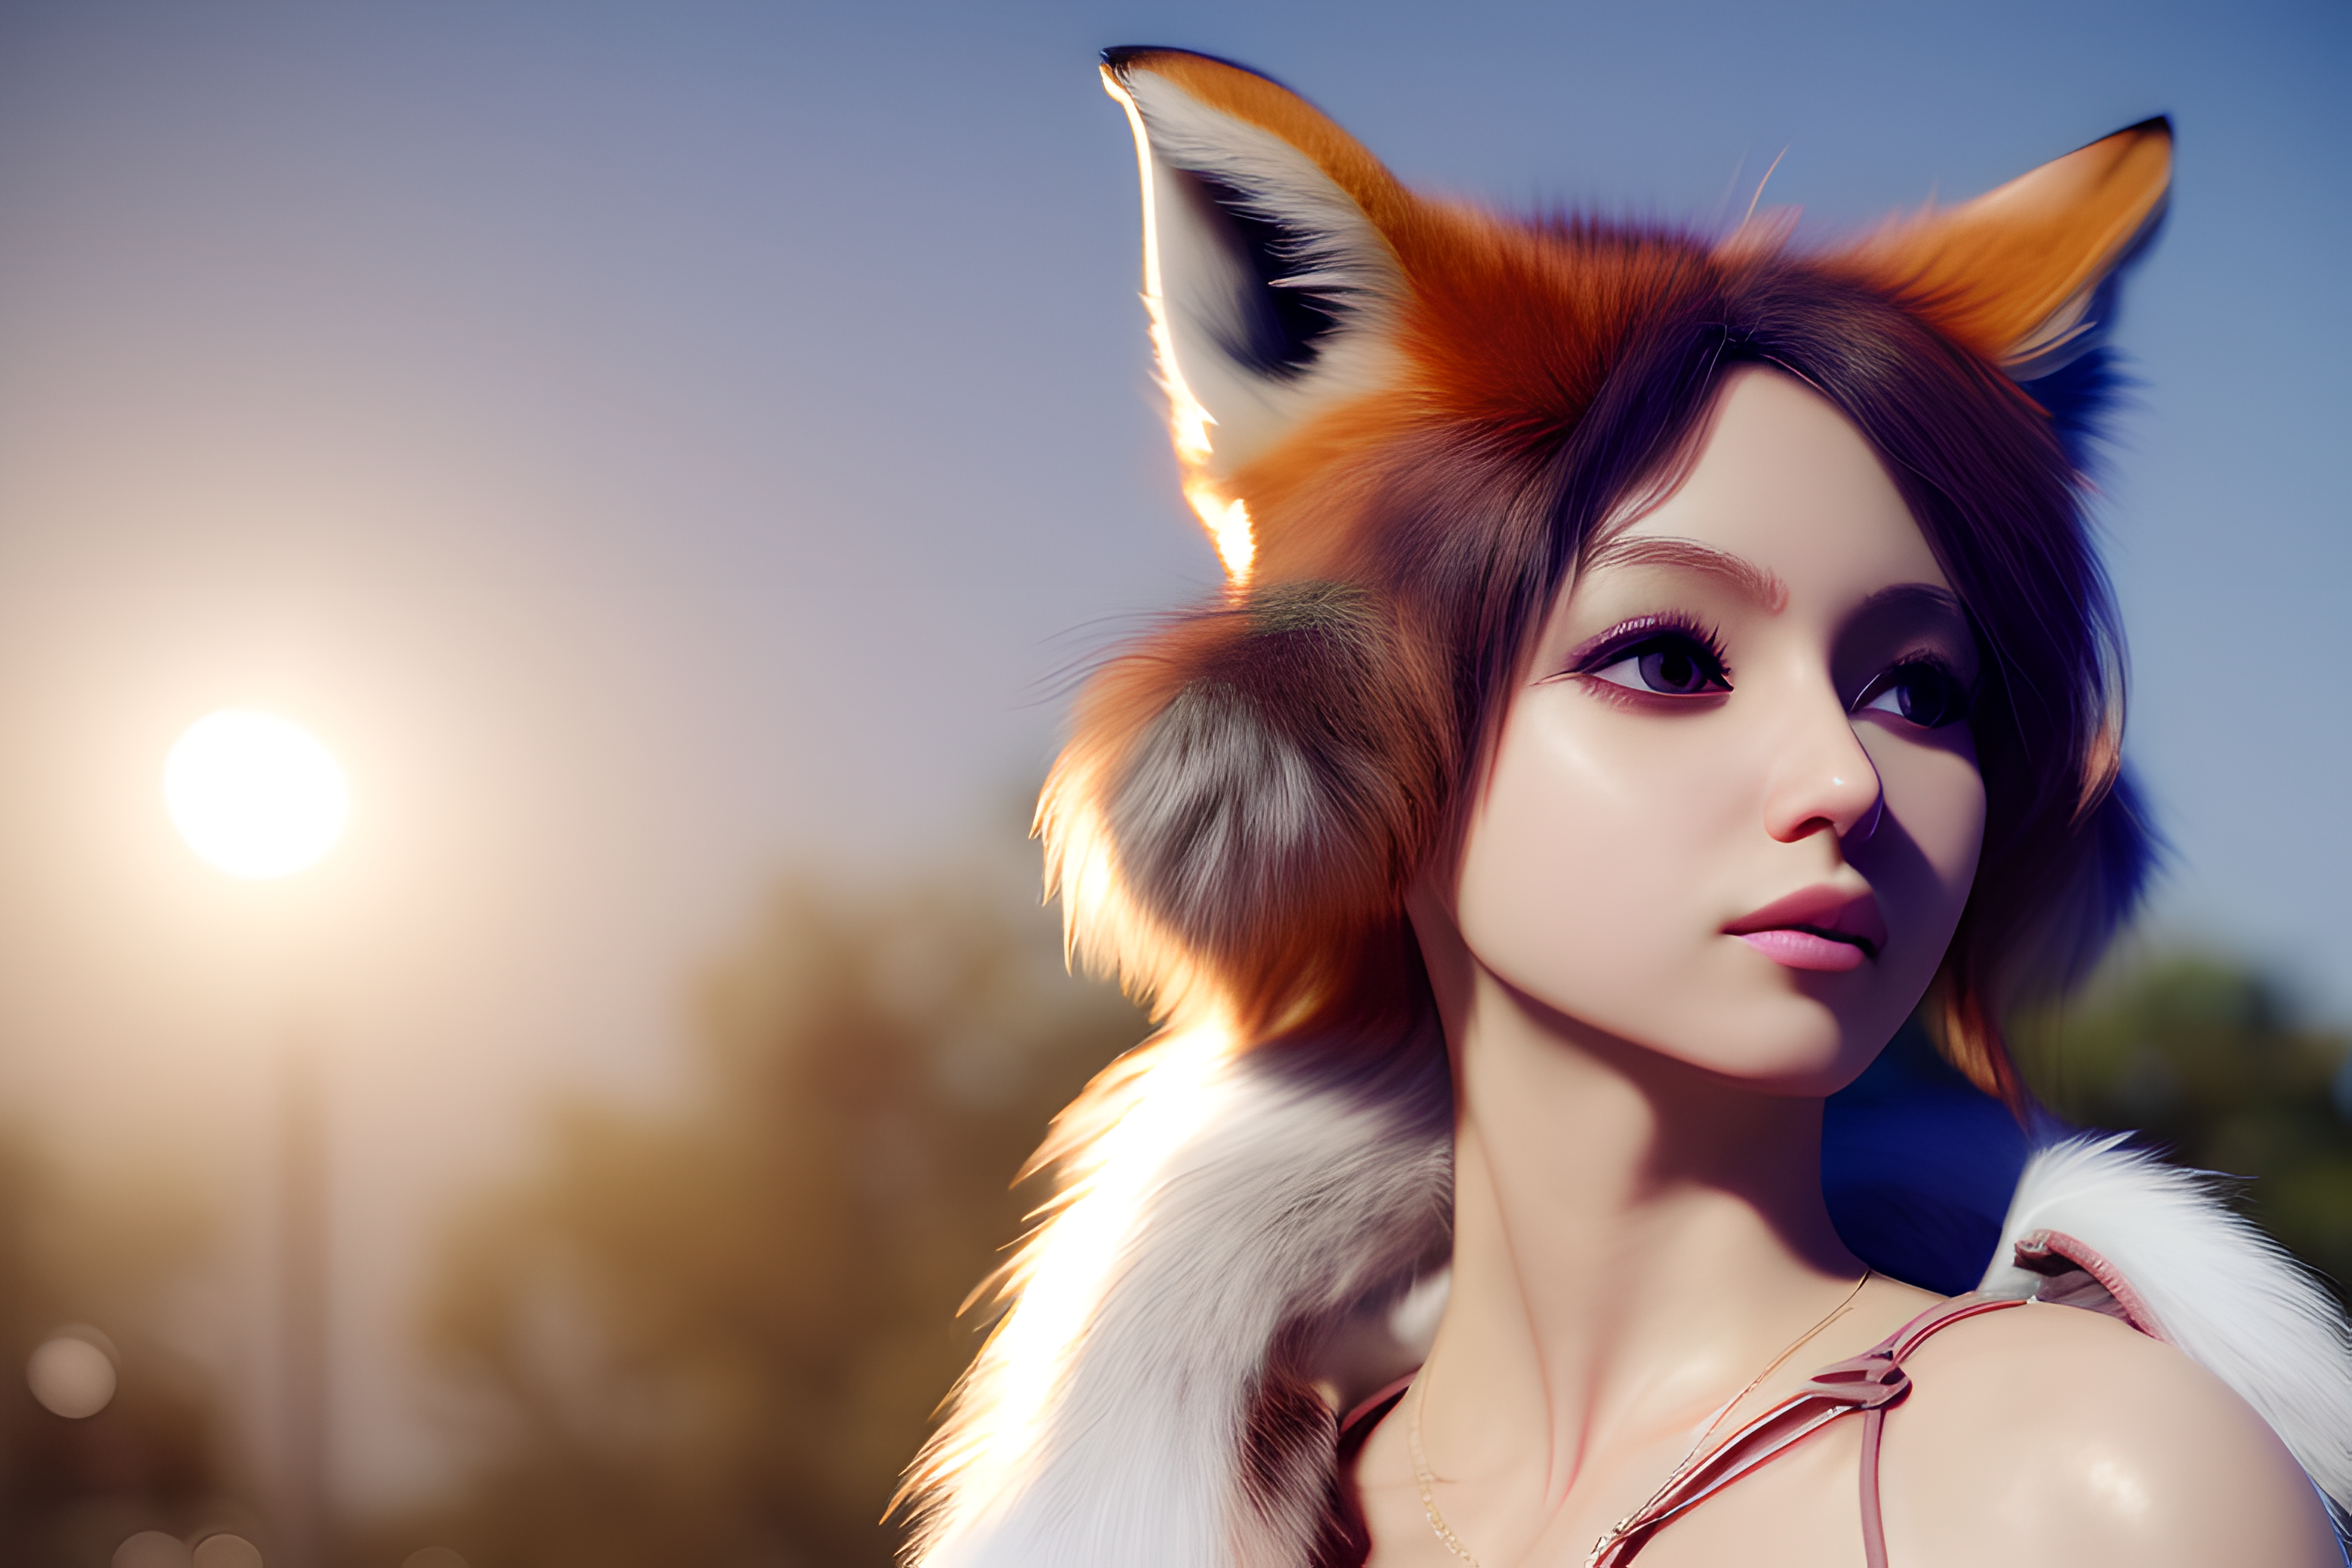 General 3072x2048 tail Stable Diffusion CGI Blender AI art digital art women fox ears